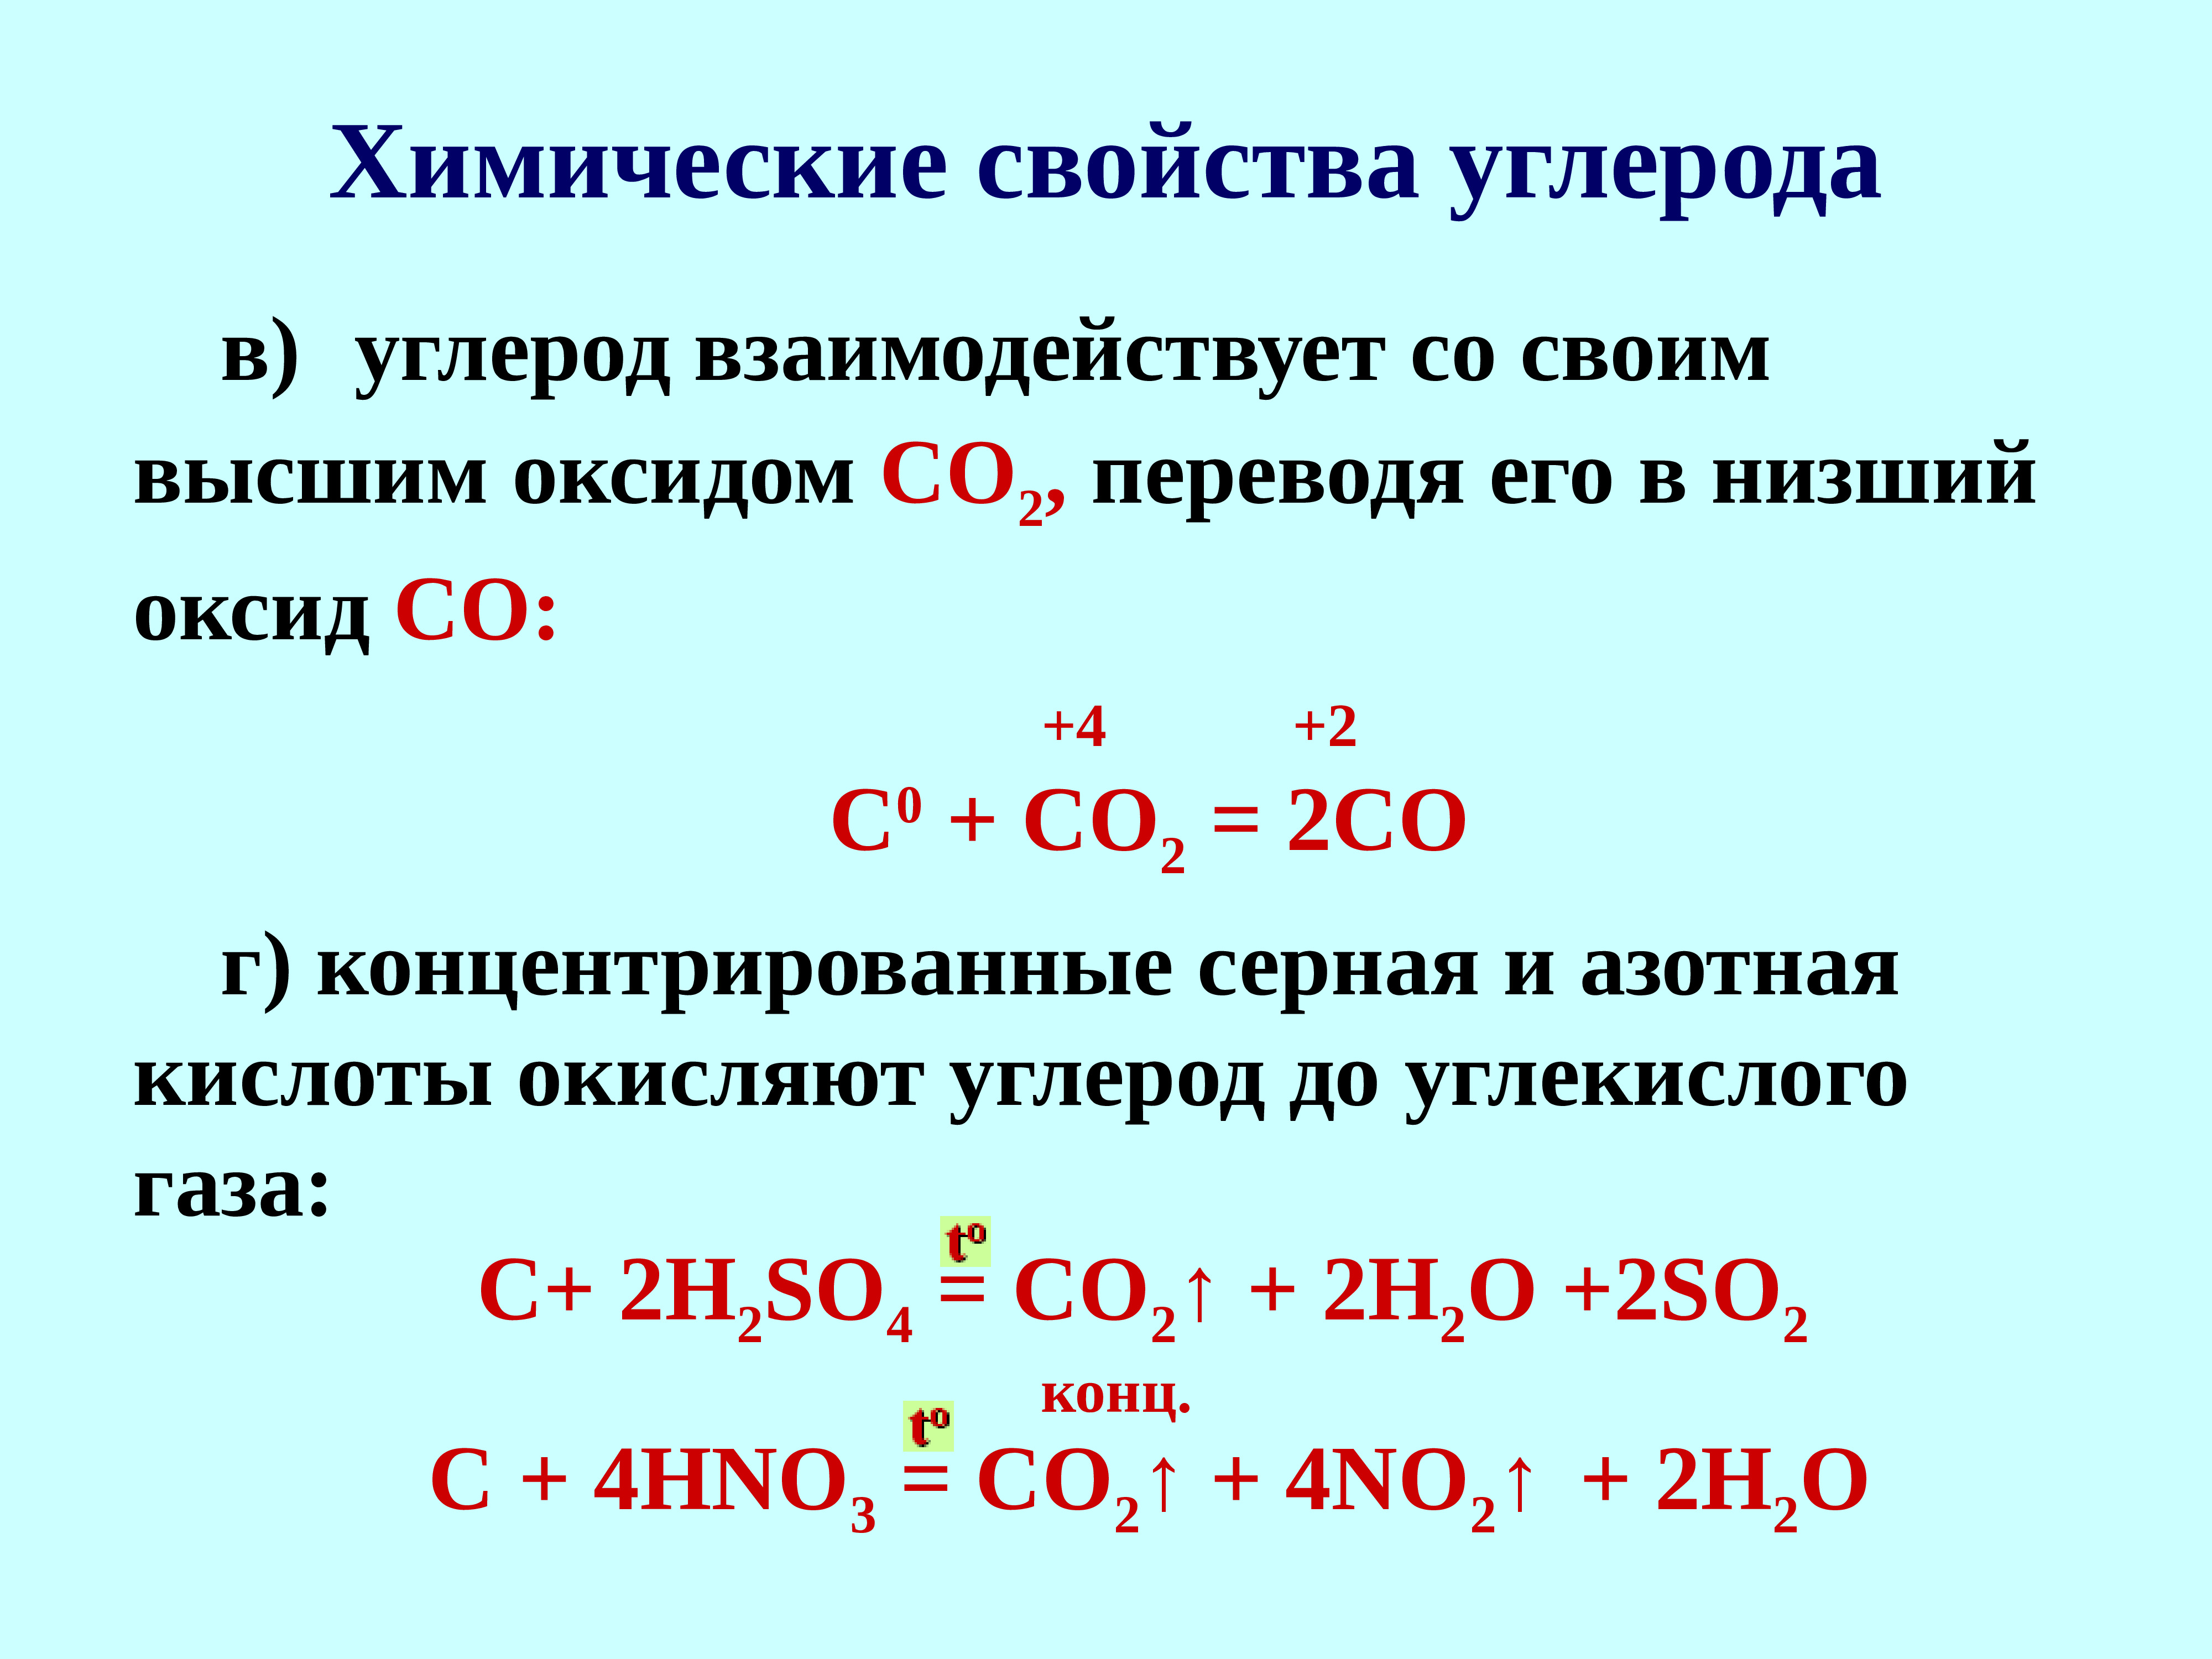 Взаимодействие хрома с оксидами. Углерод плюс азотная концентрированная. Углерод плюс концентрированная серной кислота. Взаимодействие углерода с концентрированной серной кислотой. Углерод взаимодействует с кислотами.